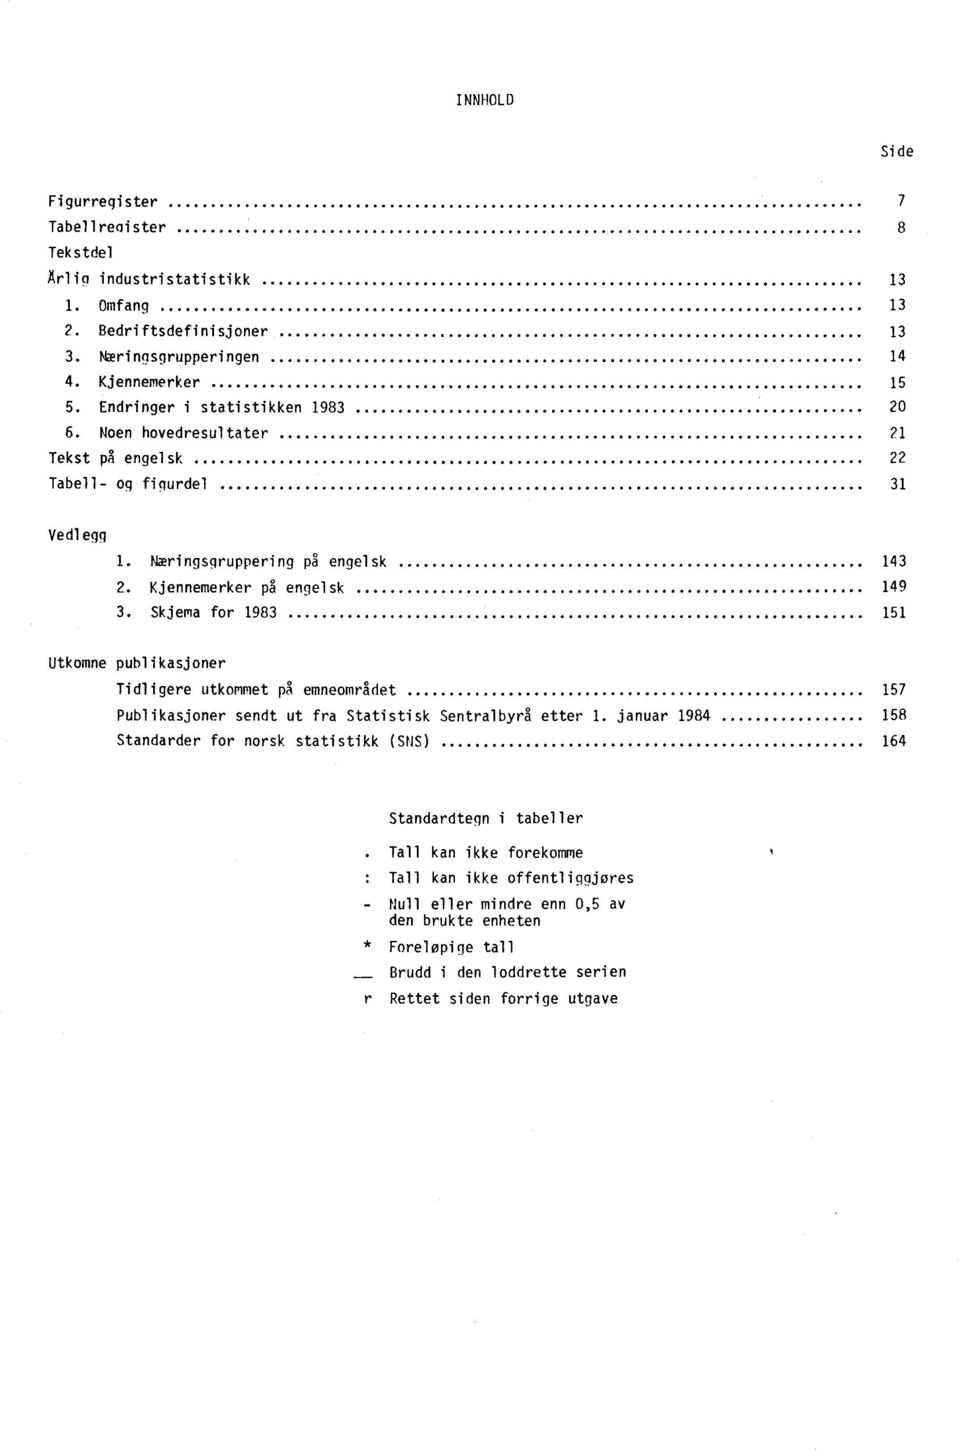 Skjema for 1983 151 Utkomne publikasjoner Tidligere utkommet pa emneområdet 157 Publikasjoner sendt ut fra Statistisk Sentralbyrå etter 1.